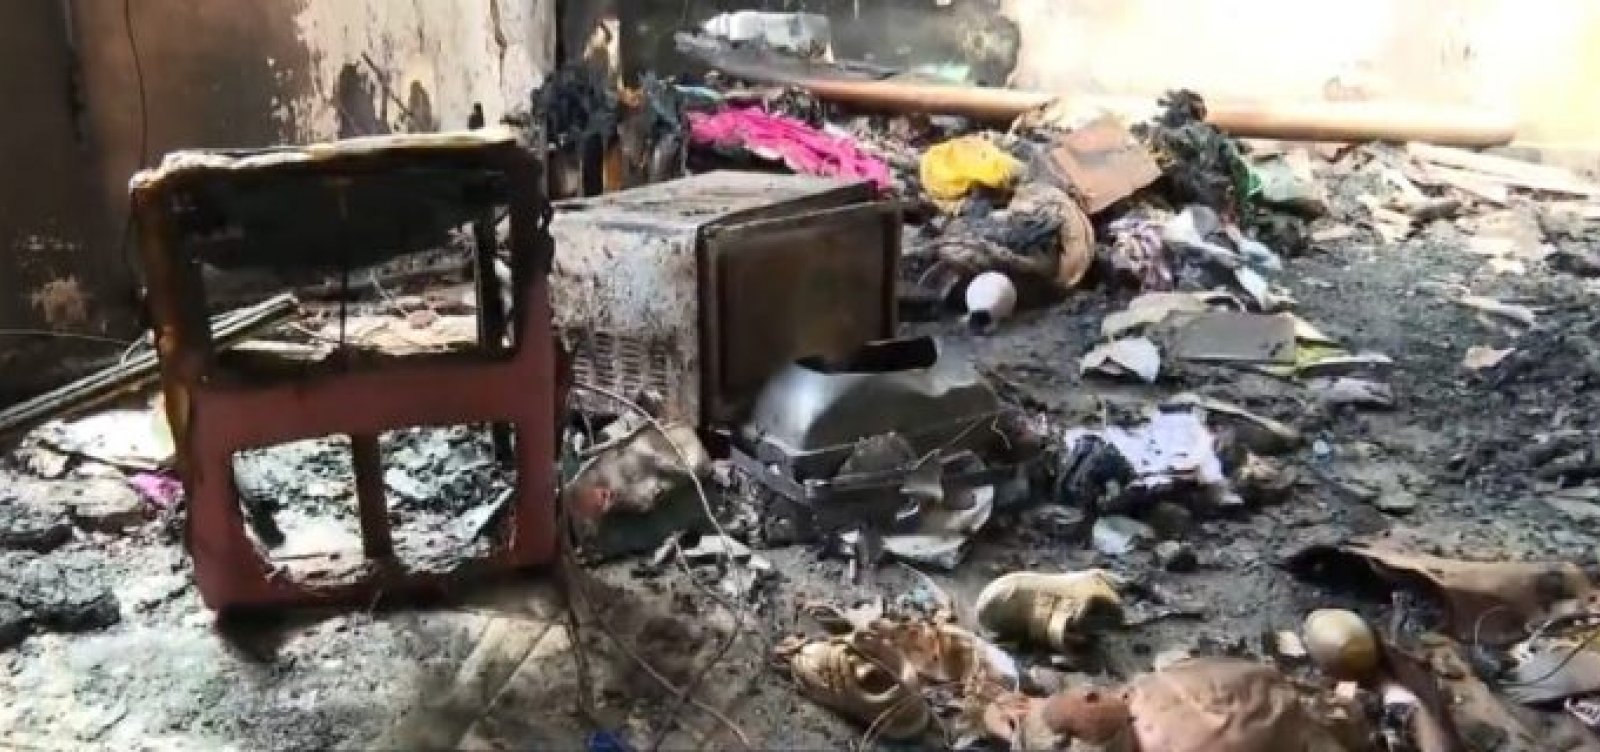 Após ser deixada sozinha, criança de dois anos morre em incêndio em apartamento no interior da Bahia 